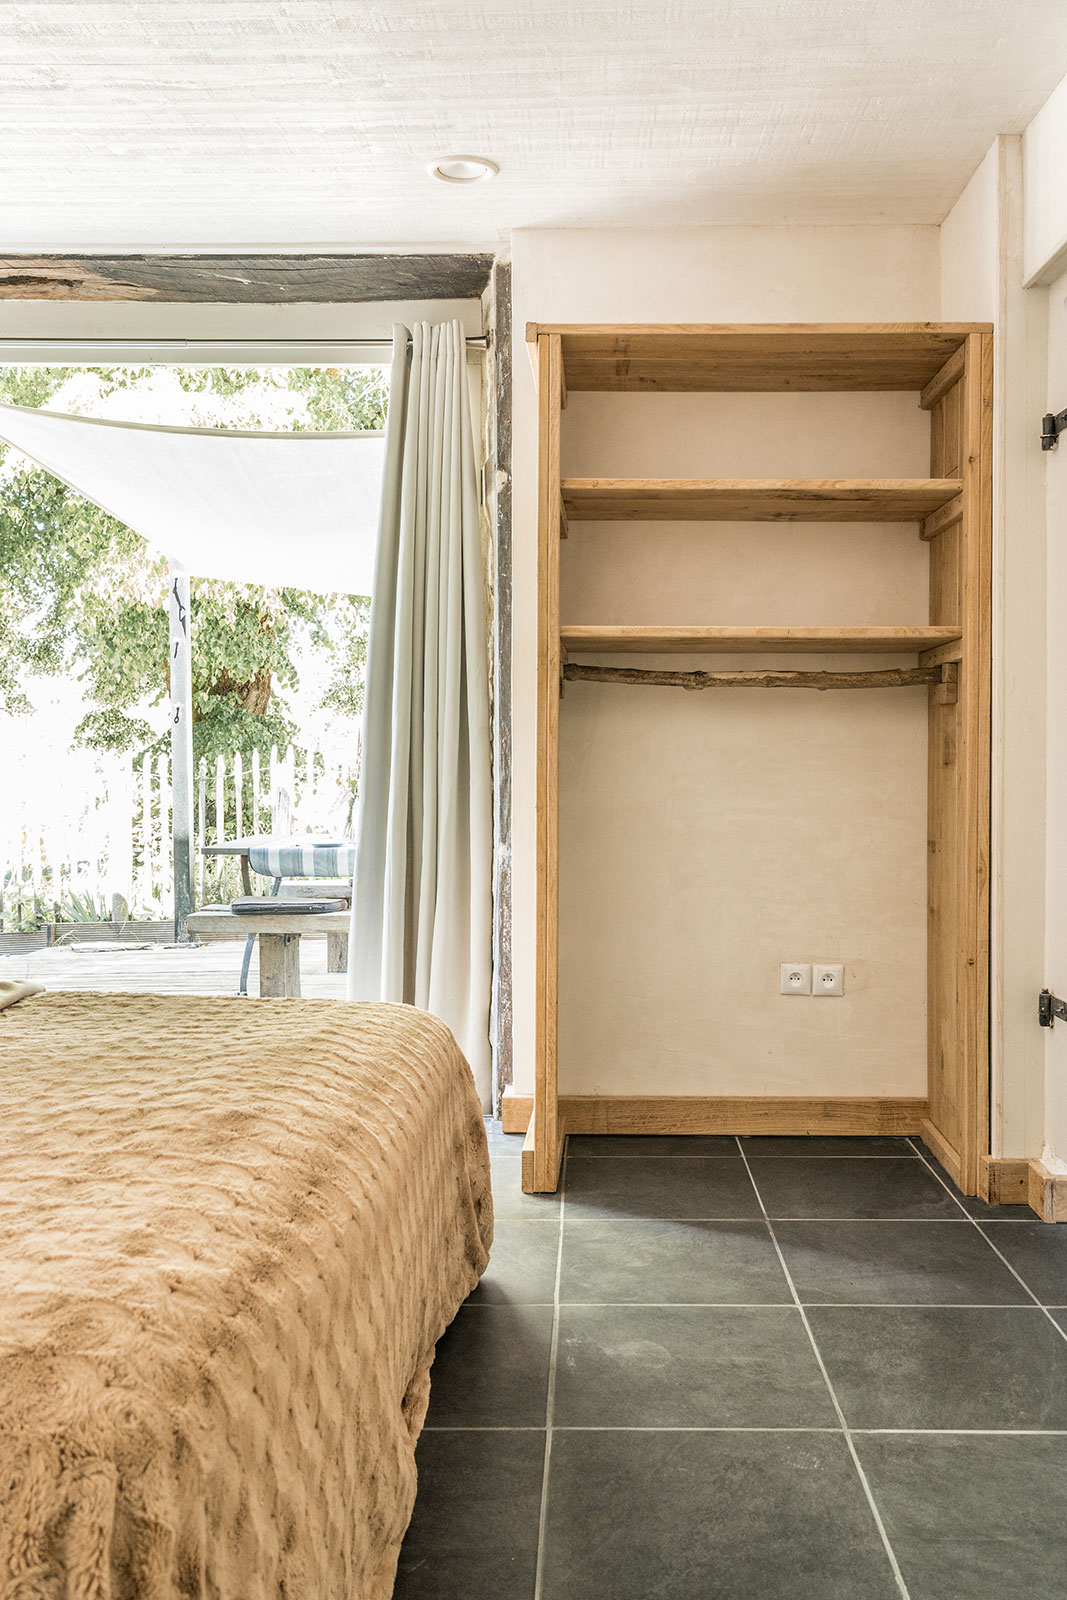 Interieur sfeer vakantiehuis LOTT Coussac-Bonneval binnen slaapkamer boxpringbed openslaande tuindeuren naar terras